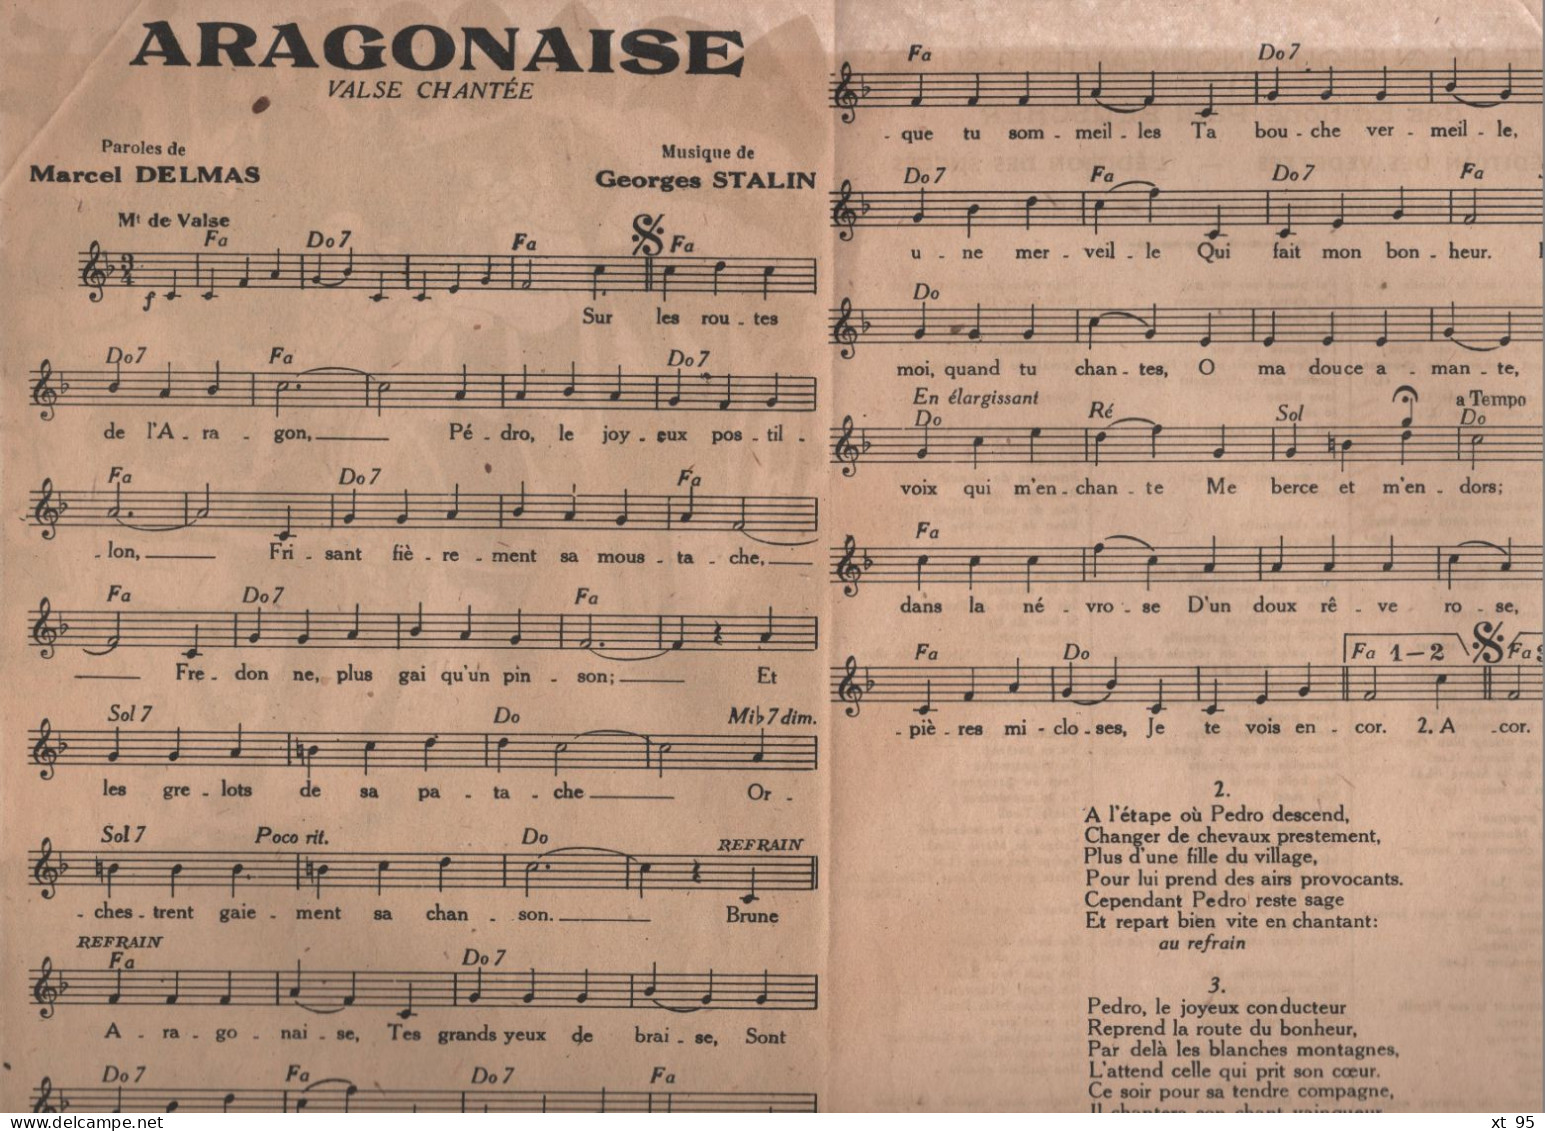 Partition - Aragonaise - Elyane Celis - Partitions Musicales Anciennes